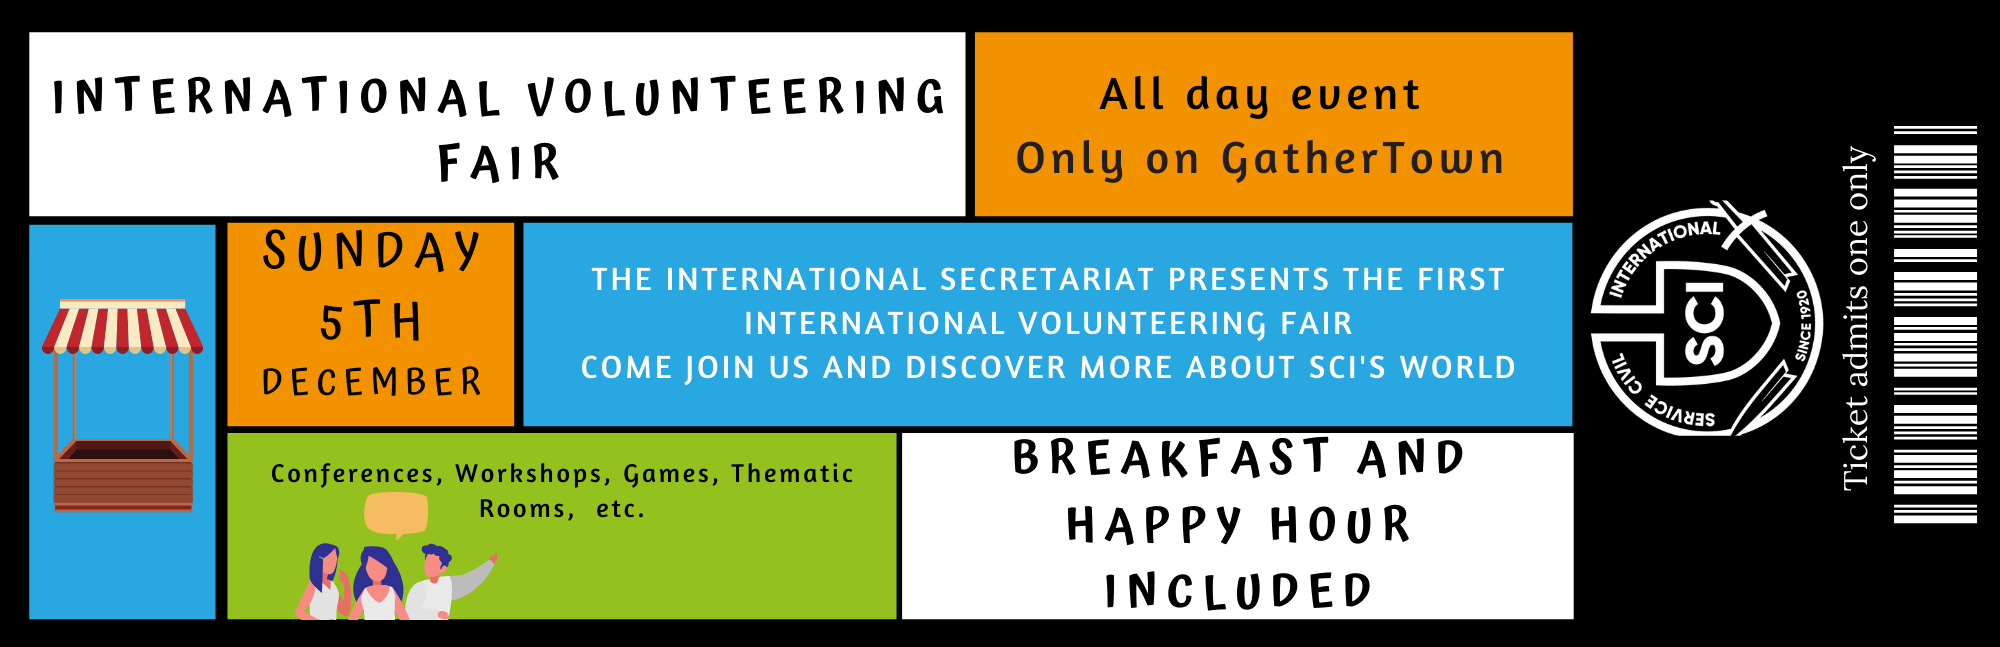 International Volunteering Fair Ticket